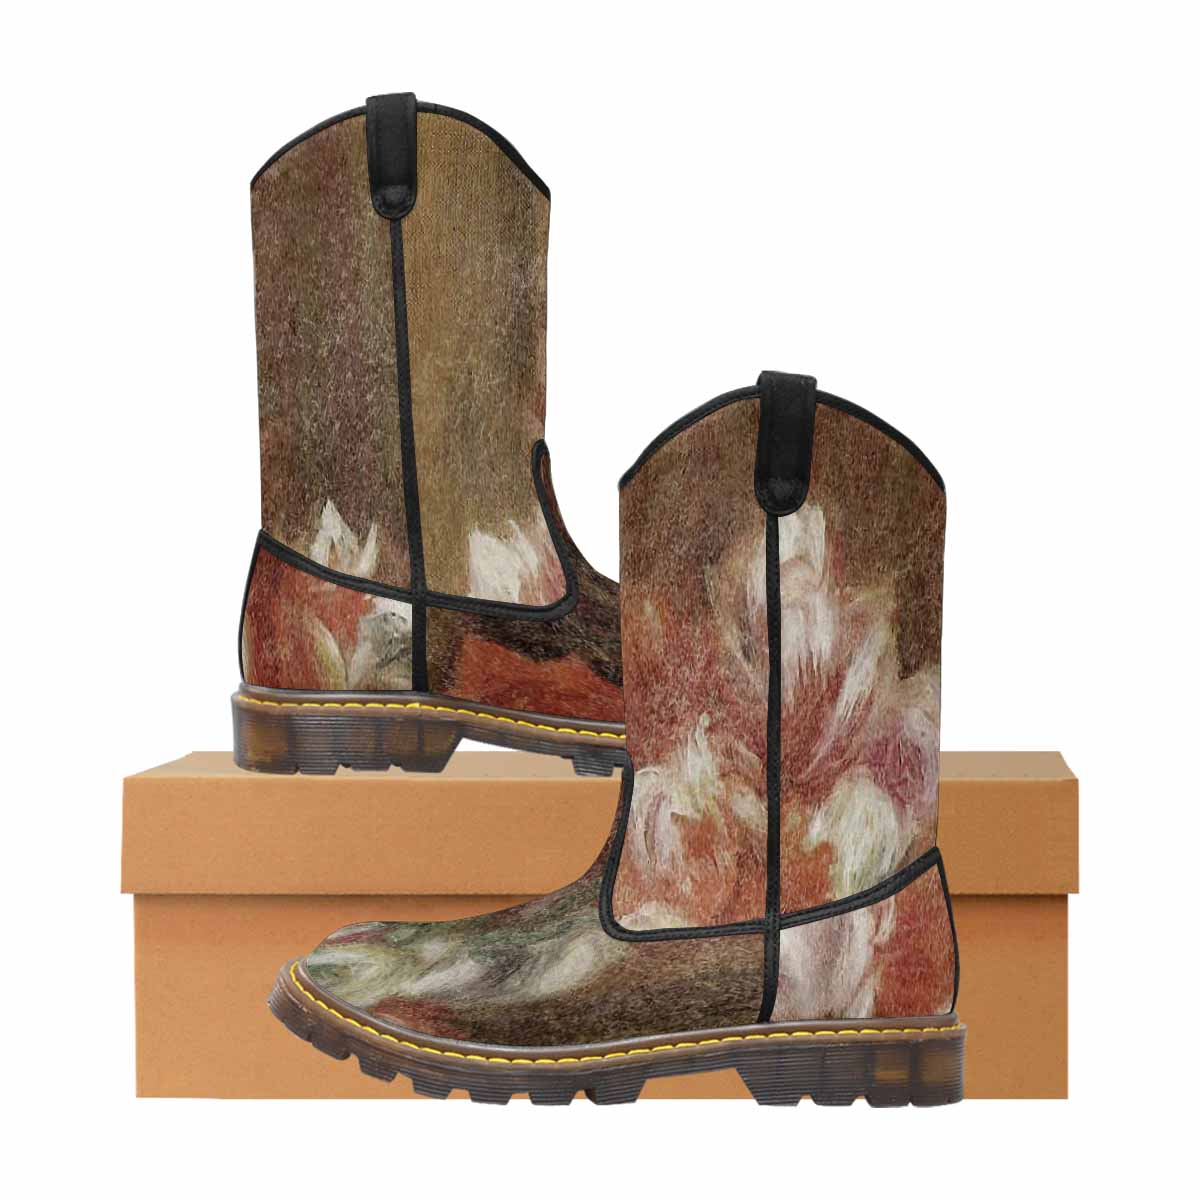 Vintage floral print, western lumber boots Design 15